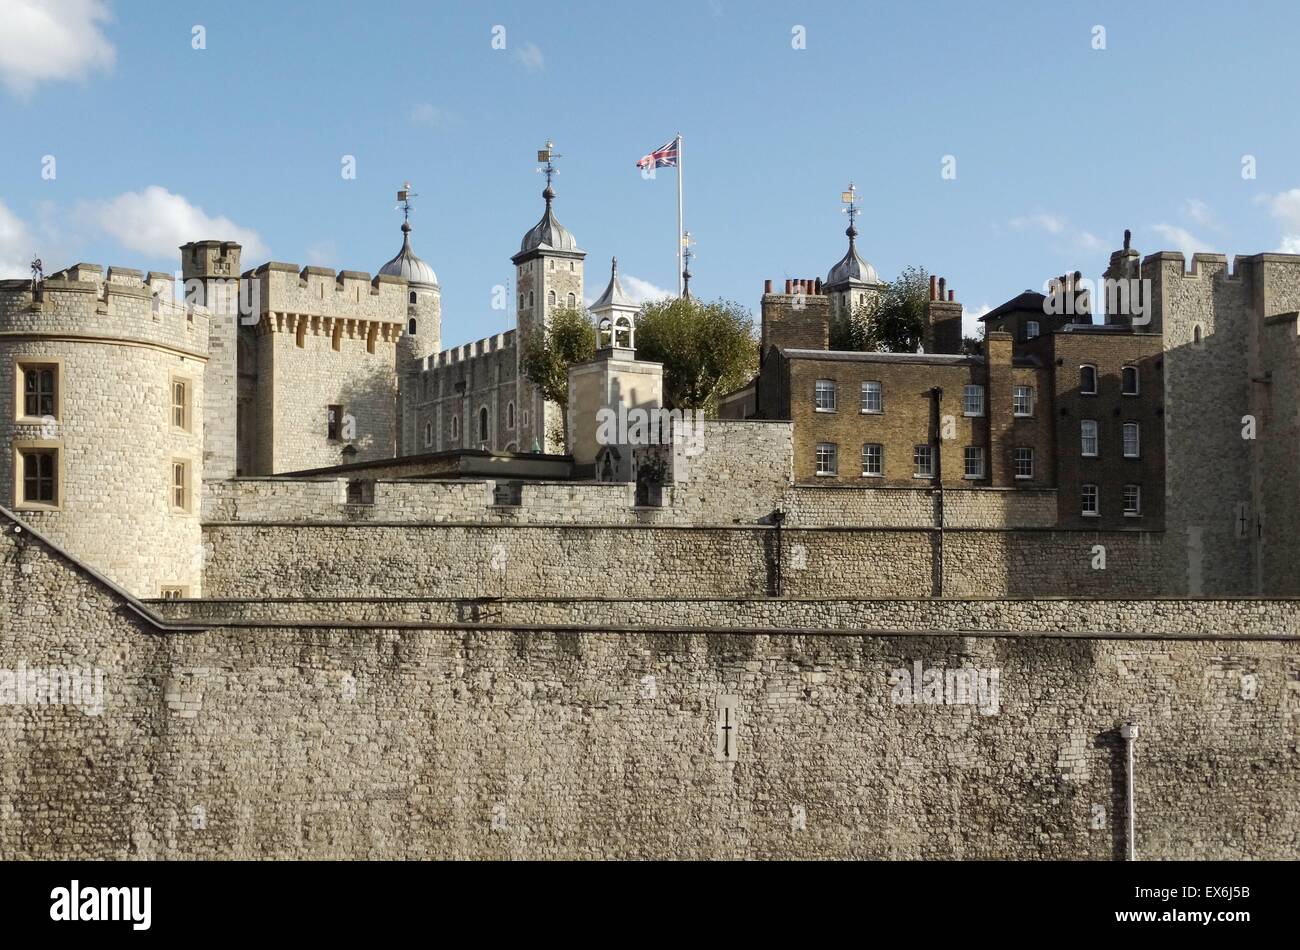 Fotografia a colori della Torre di Londra, un castello storico situato sulla riva nord del fiume Tamigi nel centro di Londra. La costruzione iniziò nel XI secolo. Datata 2014 Foto Stock